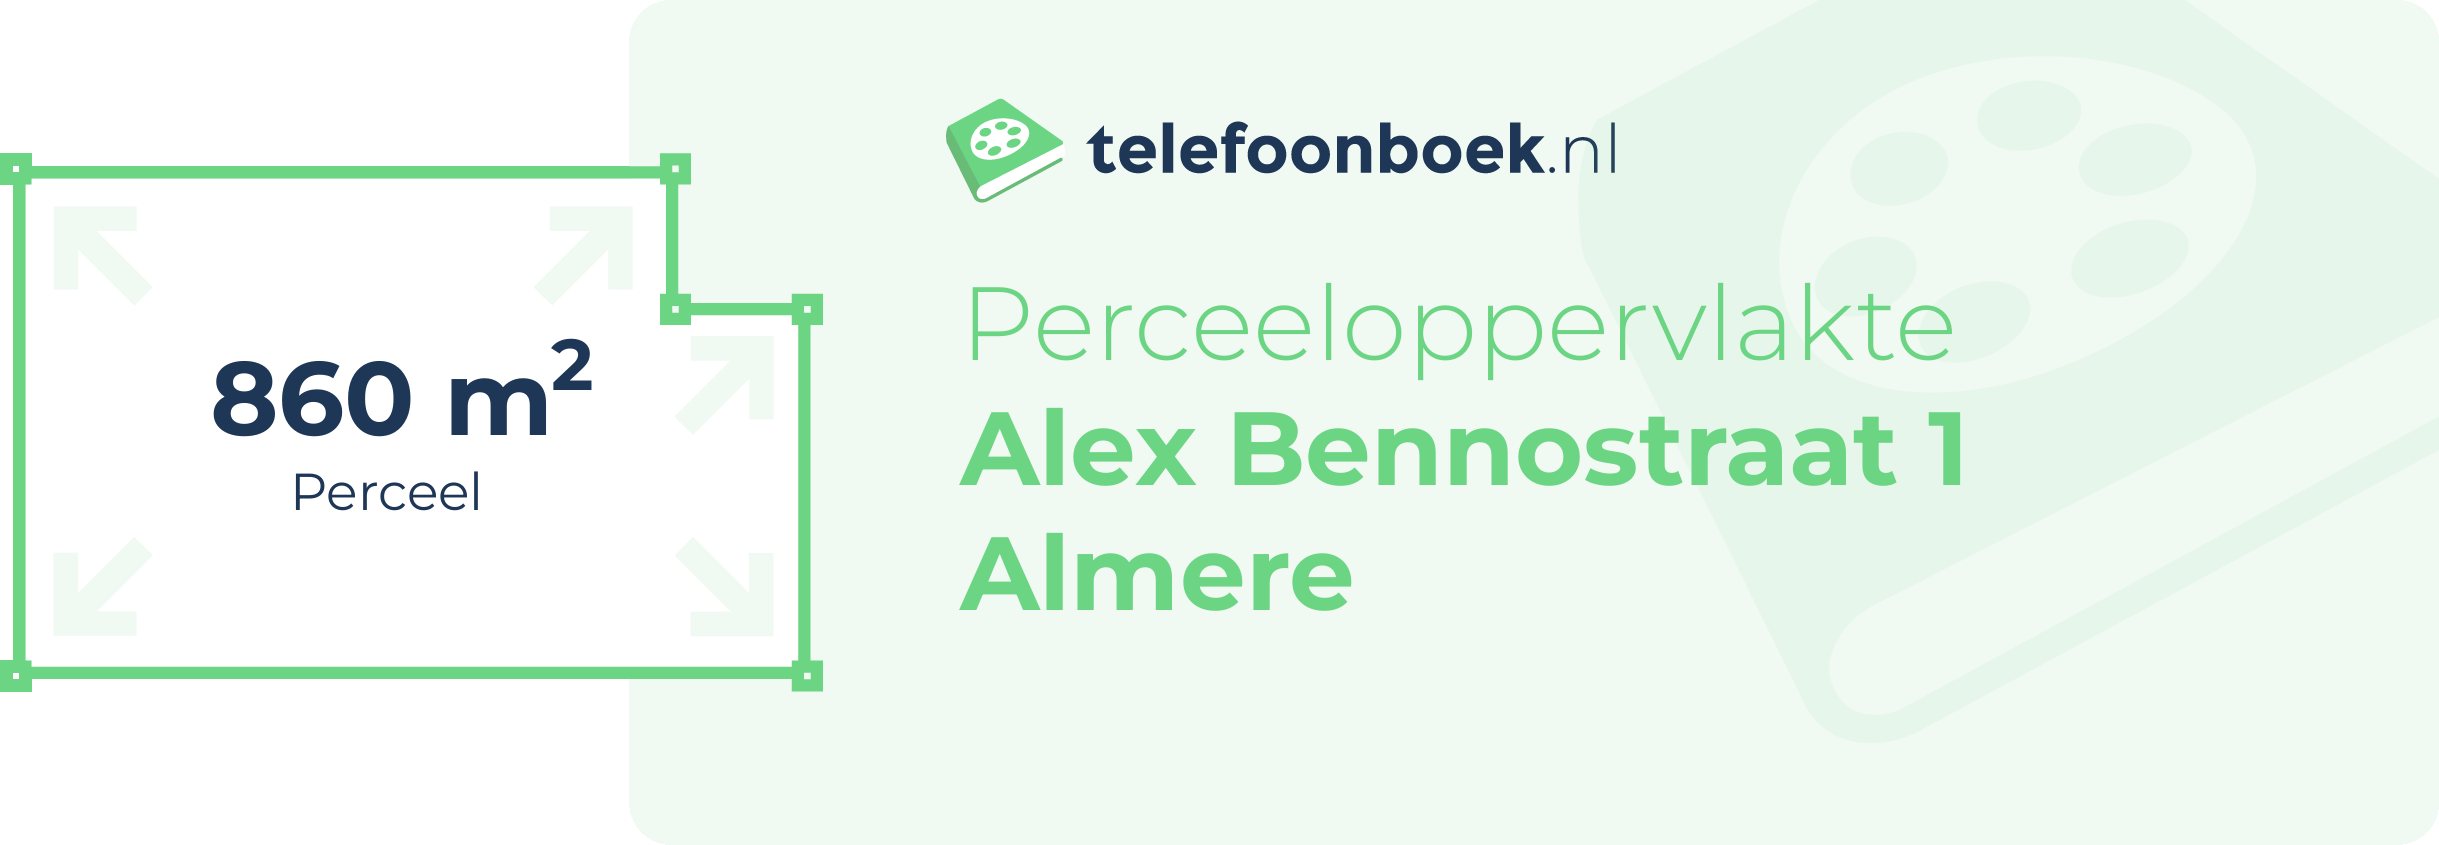 Perceeloppervlakte Alex Bennostraat 1 Almere